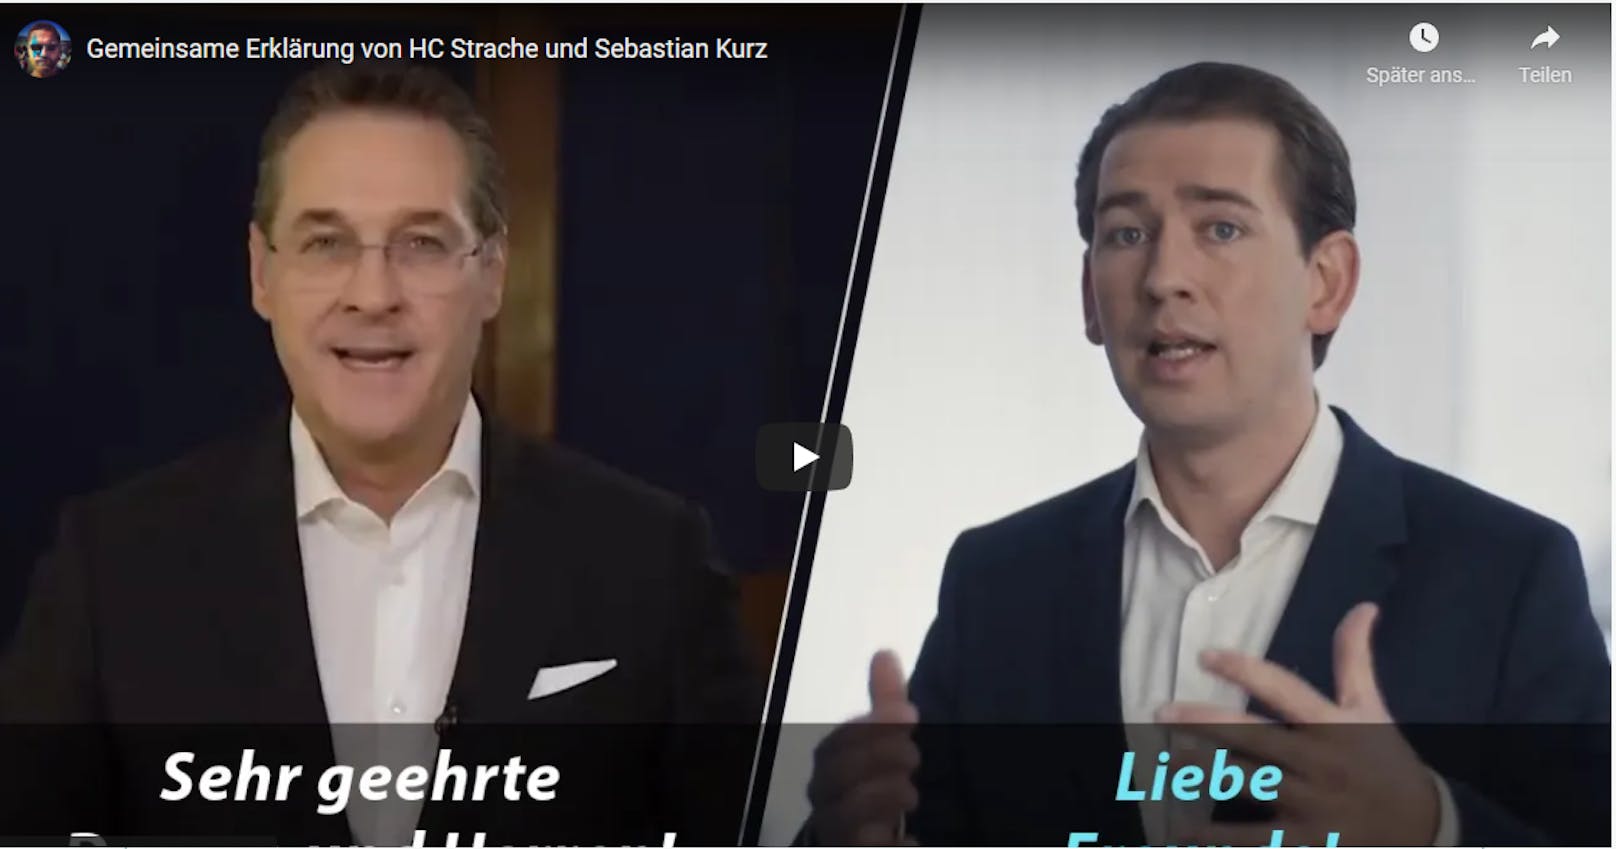 Dieses Satirevideo begeistert Netz nach ÖVP-Affäre